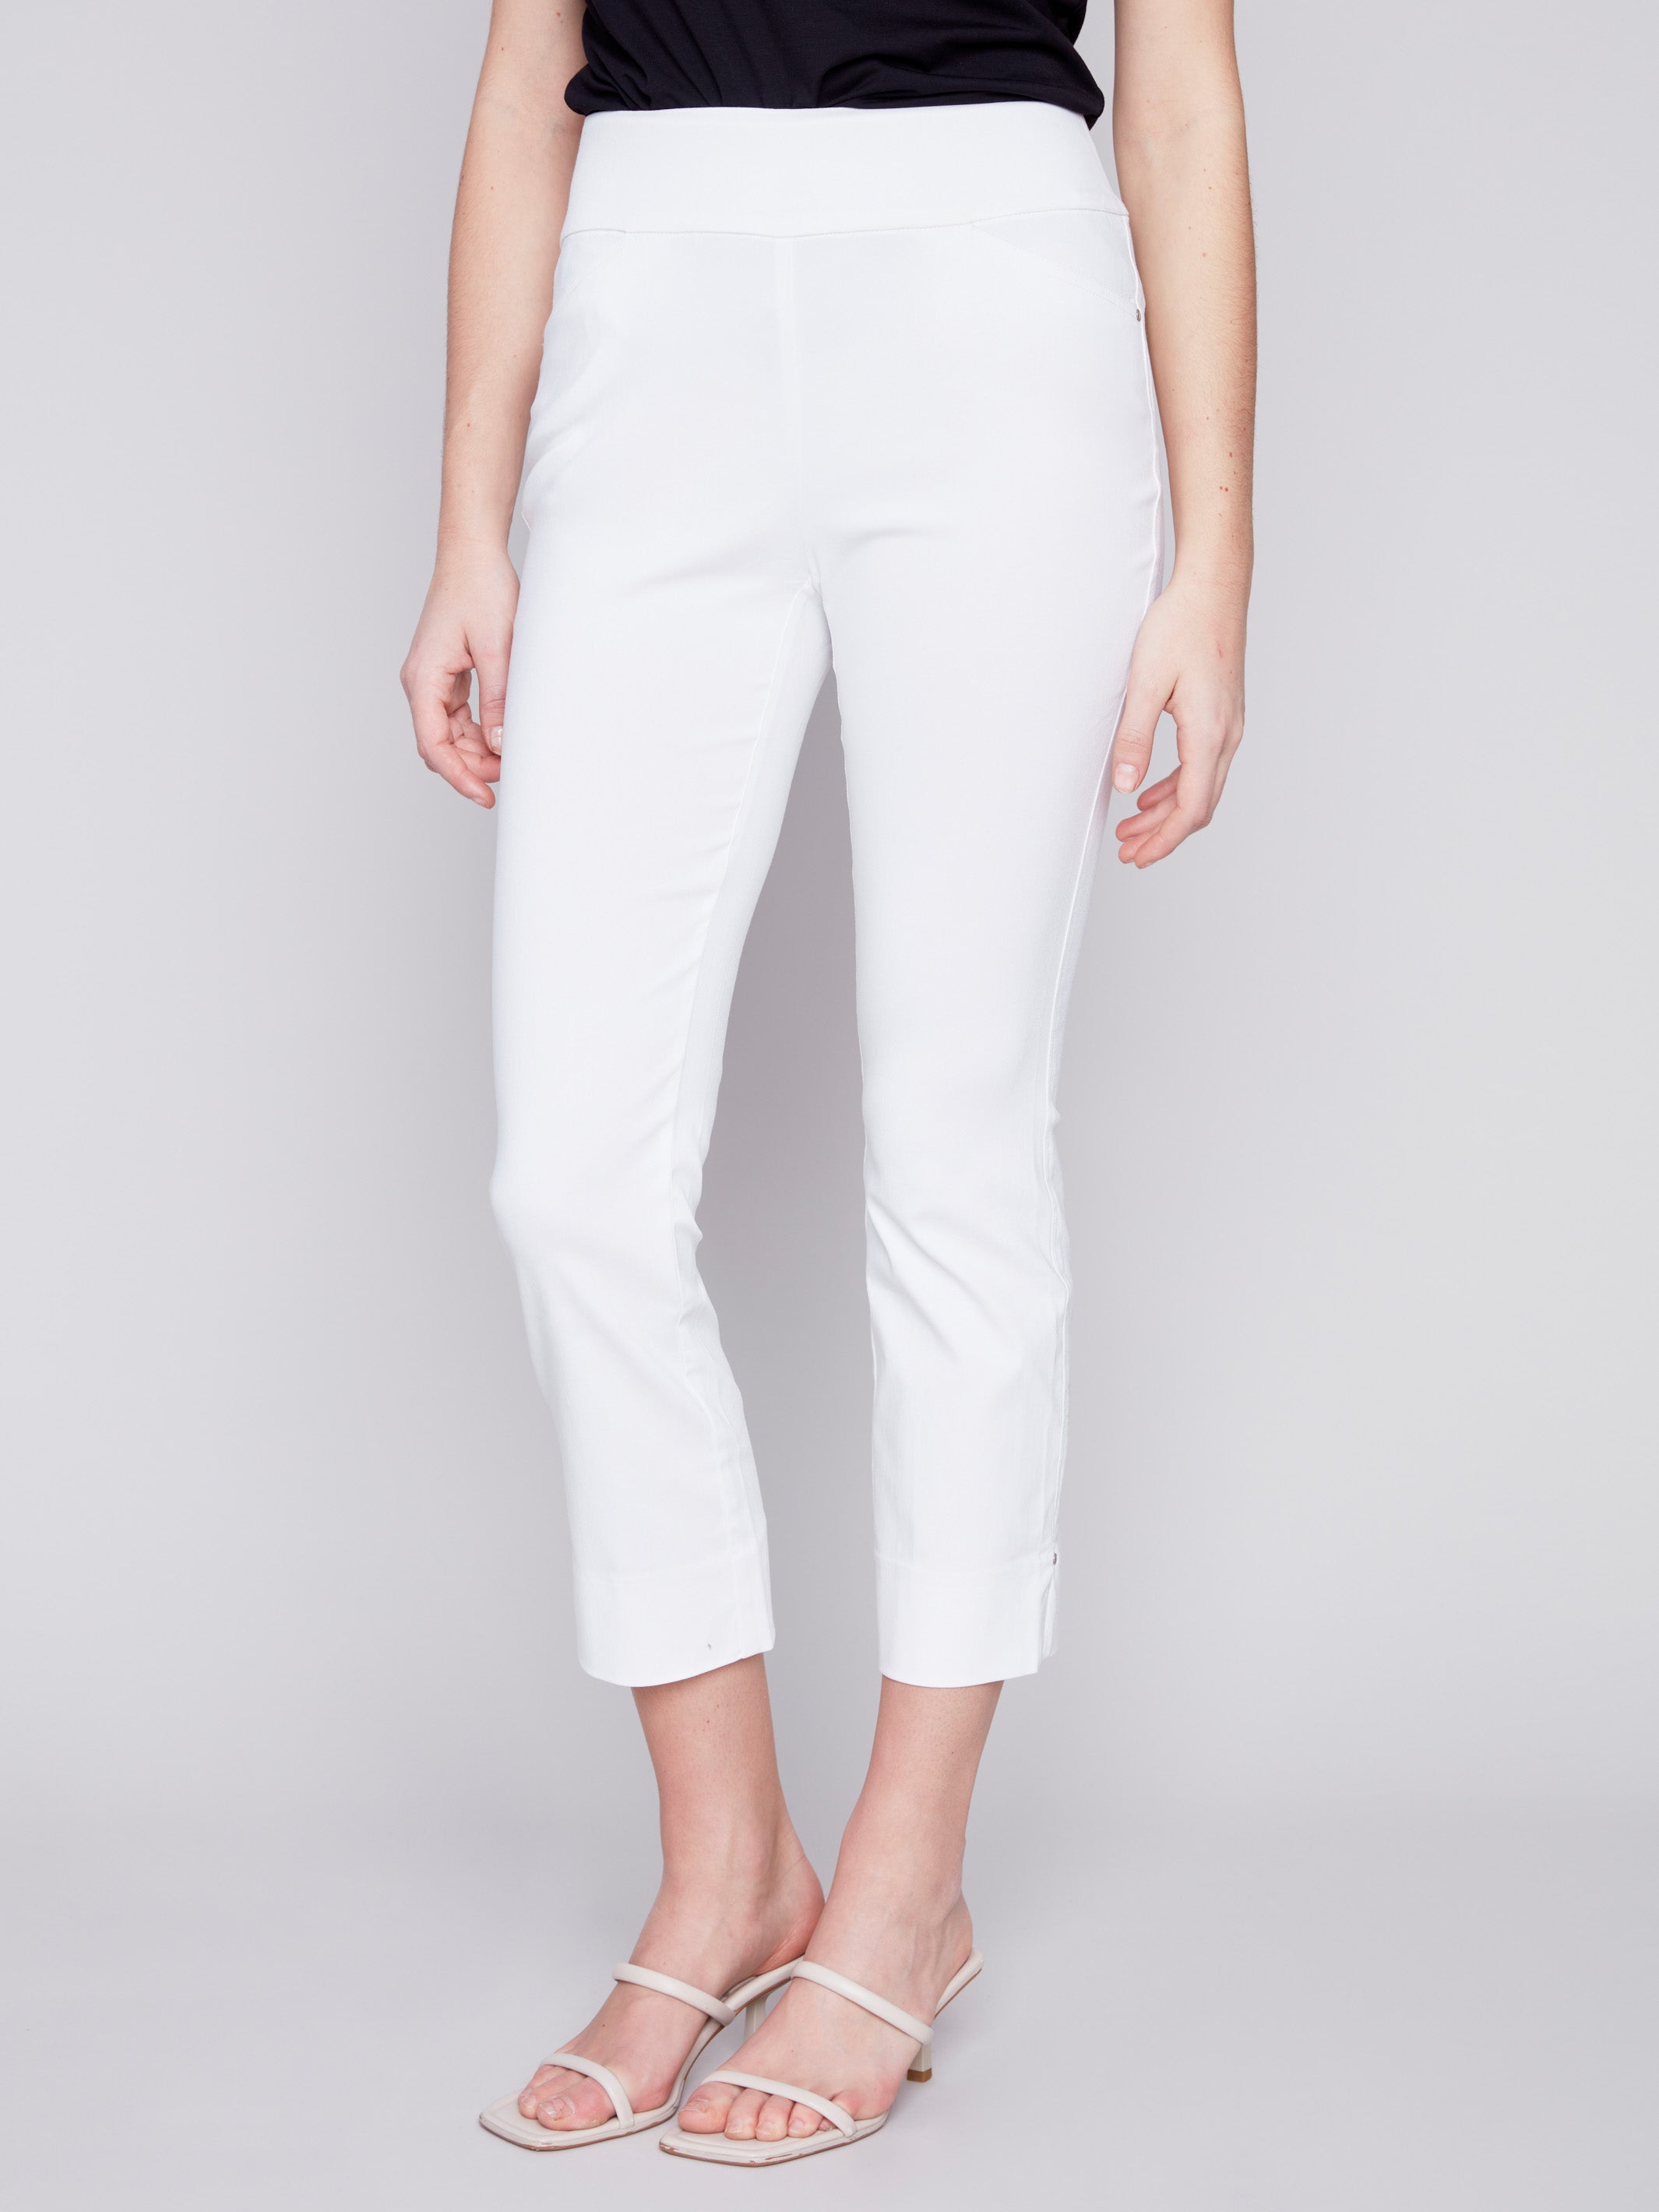 Charlie B Capri Pants with Hem Slit - White - Image 3